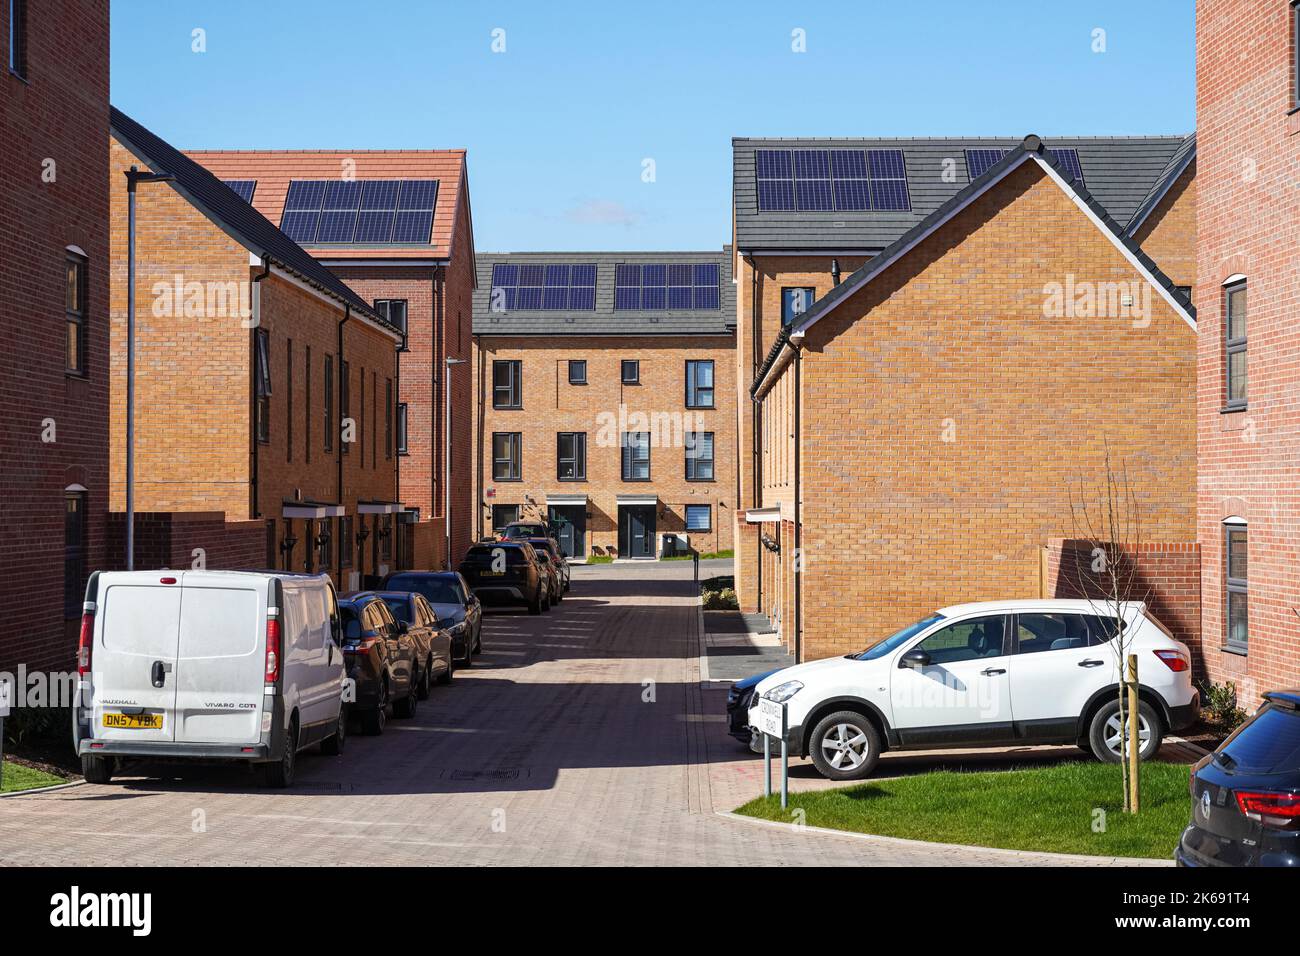 Nouveaux appartements modernes avec panneaux solaires sur le toit à Londres, Angleterre, Royaume-Uni, Royaume-Uni Banque D'Images